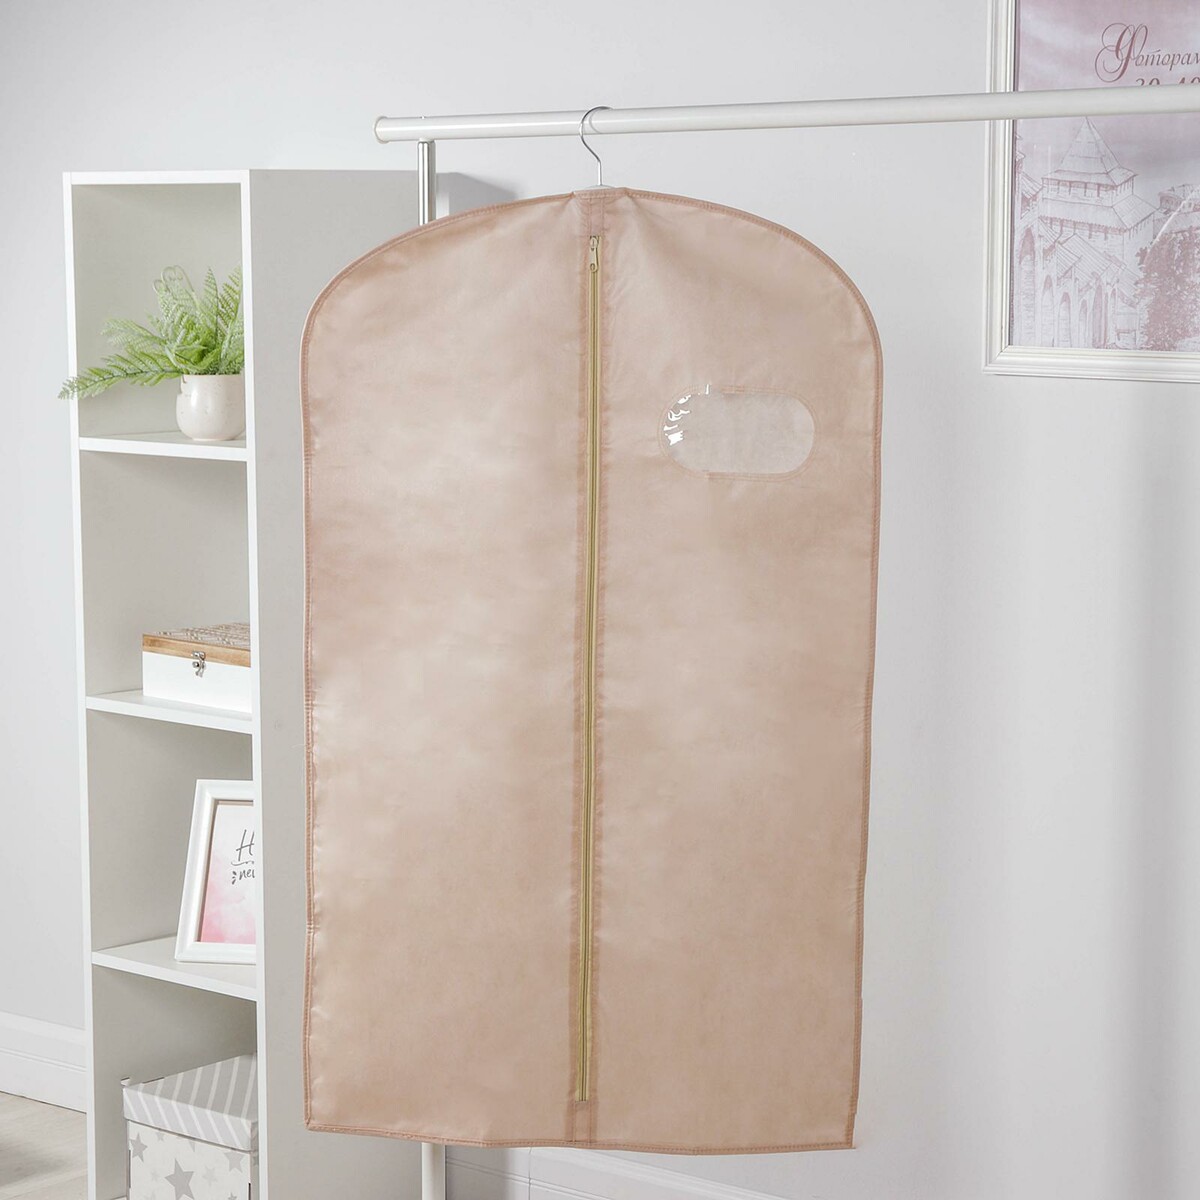 Чехол для одежды с окном, 60×120 см, спанбонд, бежевый, No brand